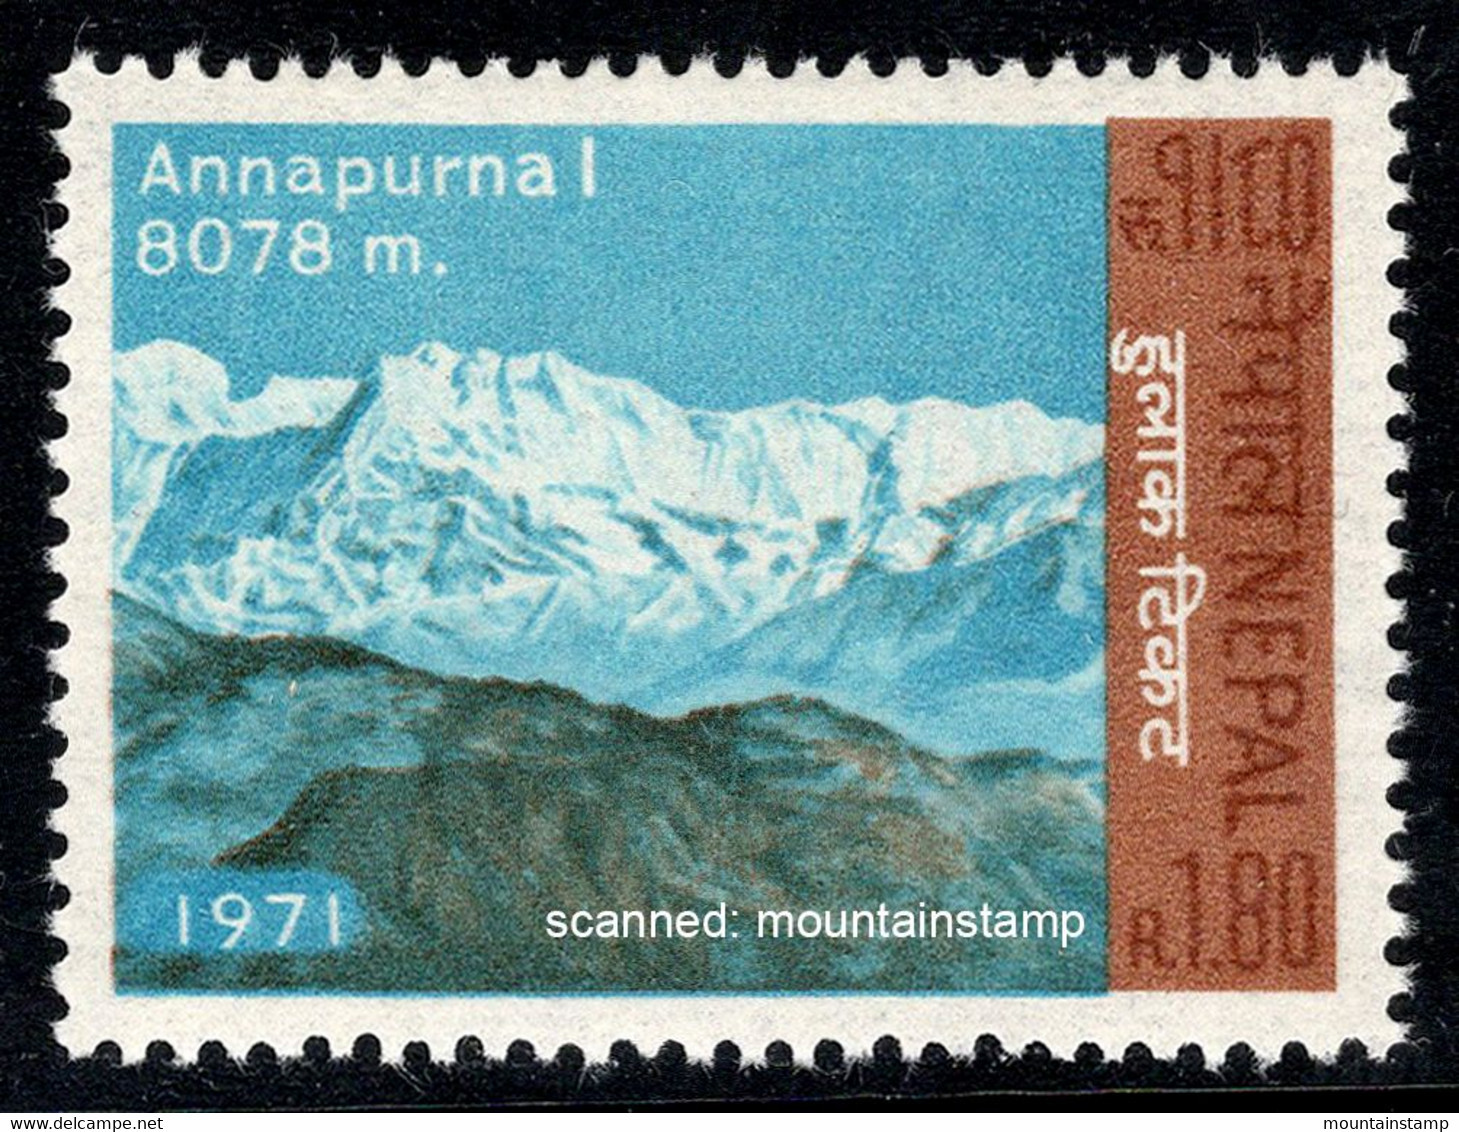 Nepal 1971 Mountains Berge Annapurna I 8091m MNH ** - Népal